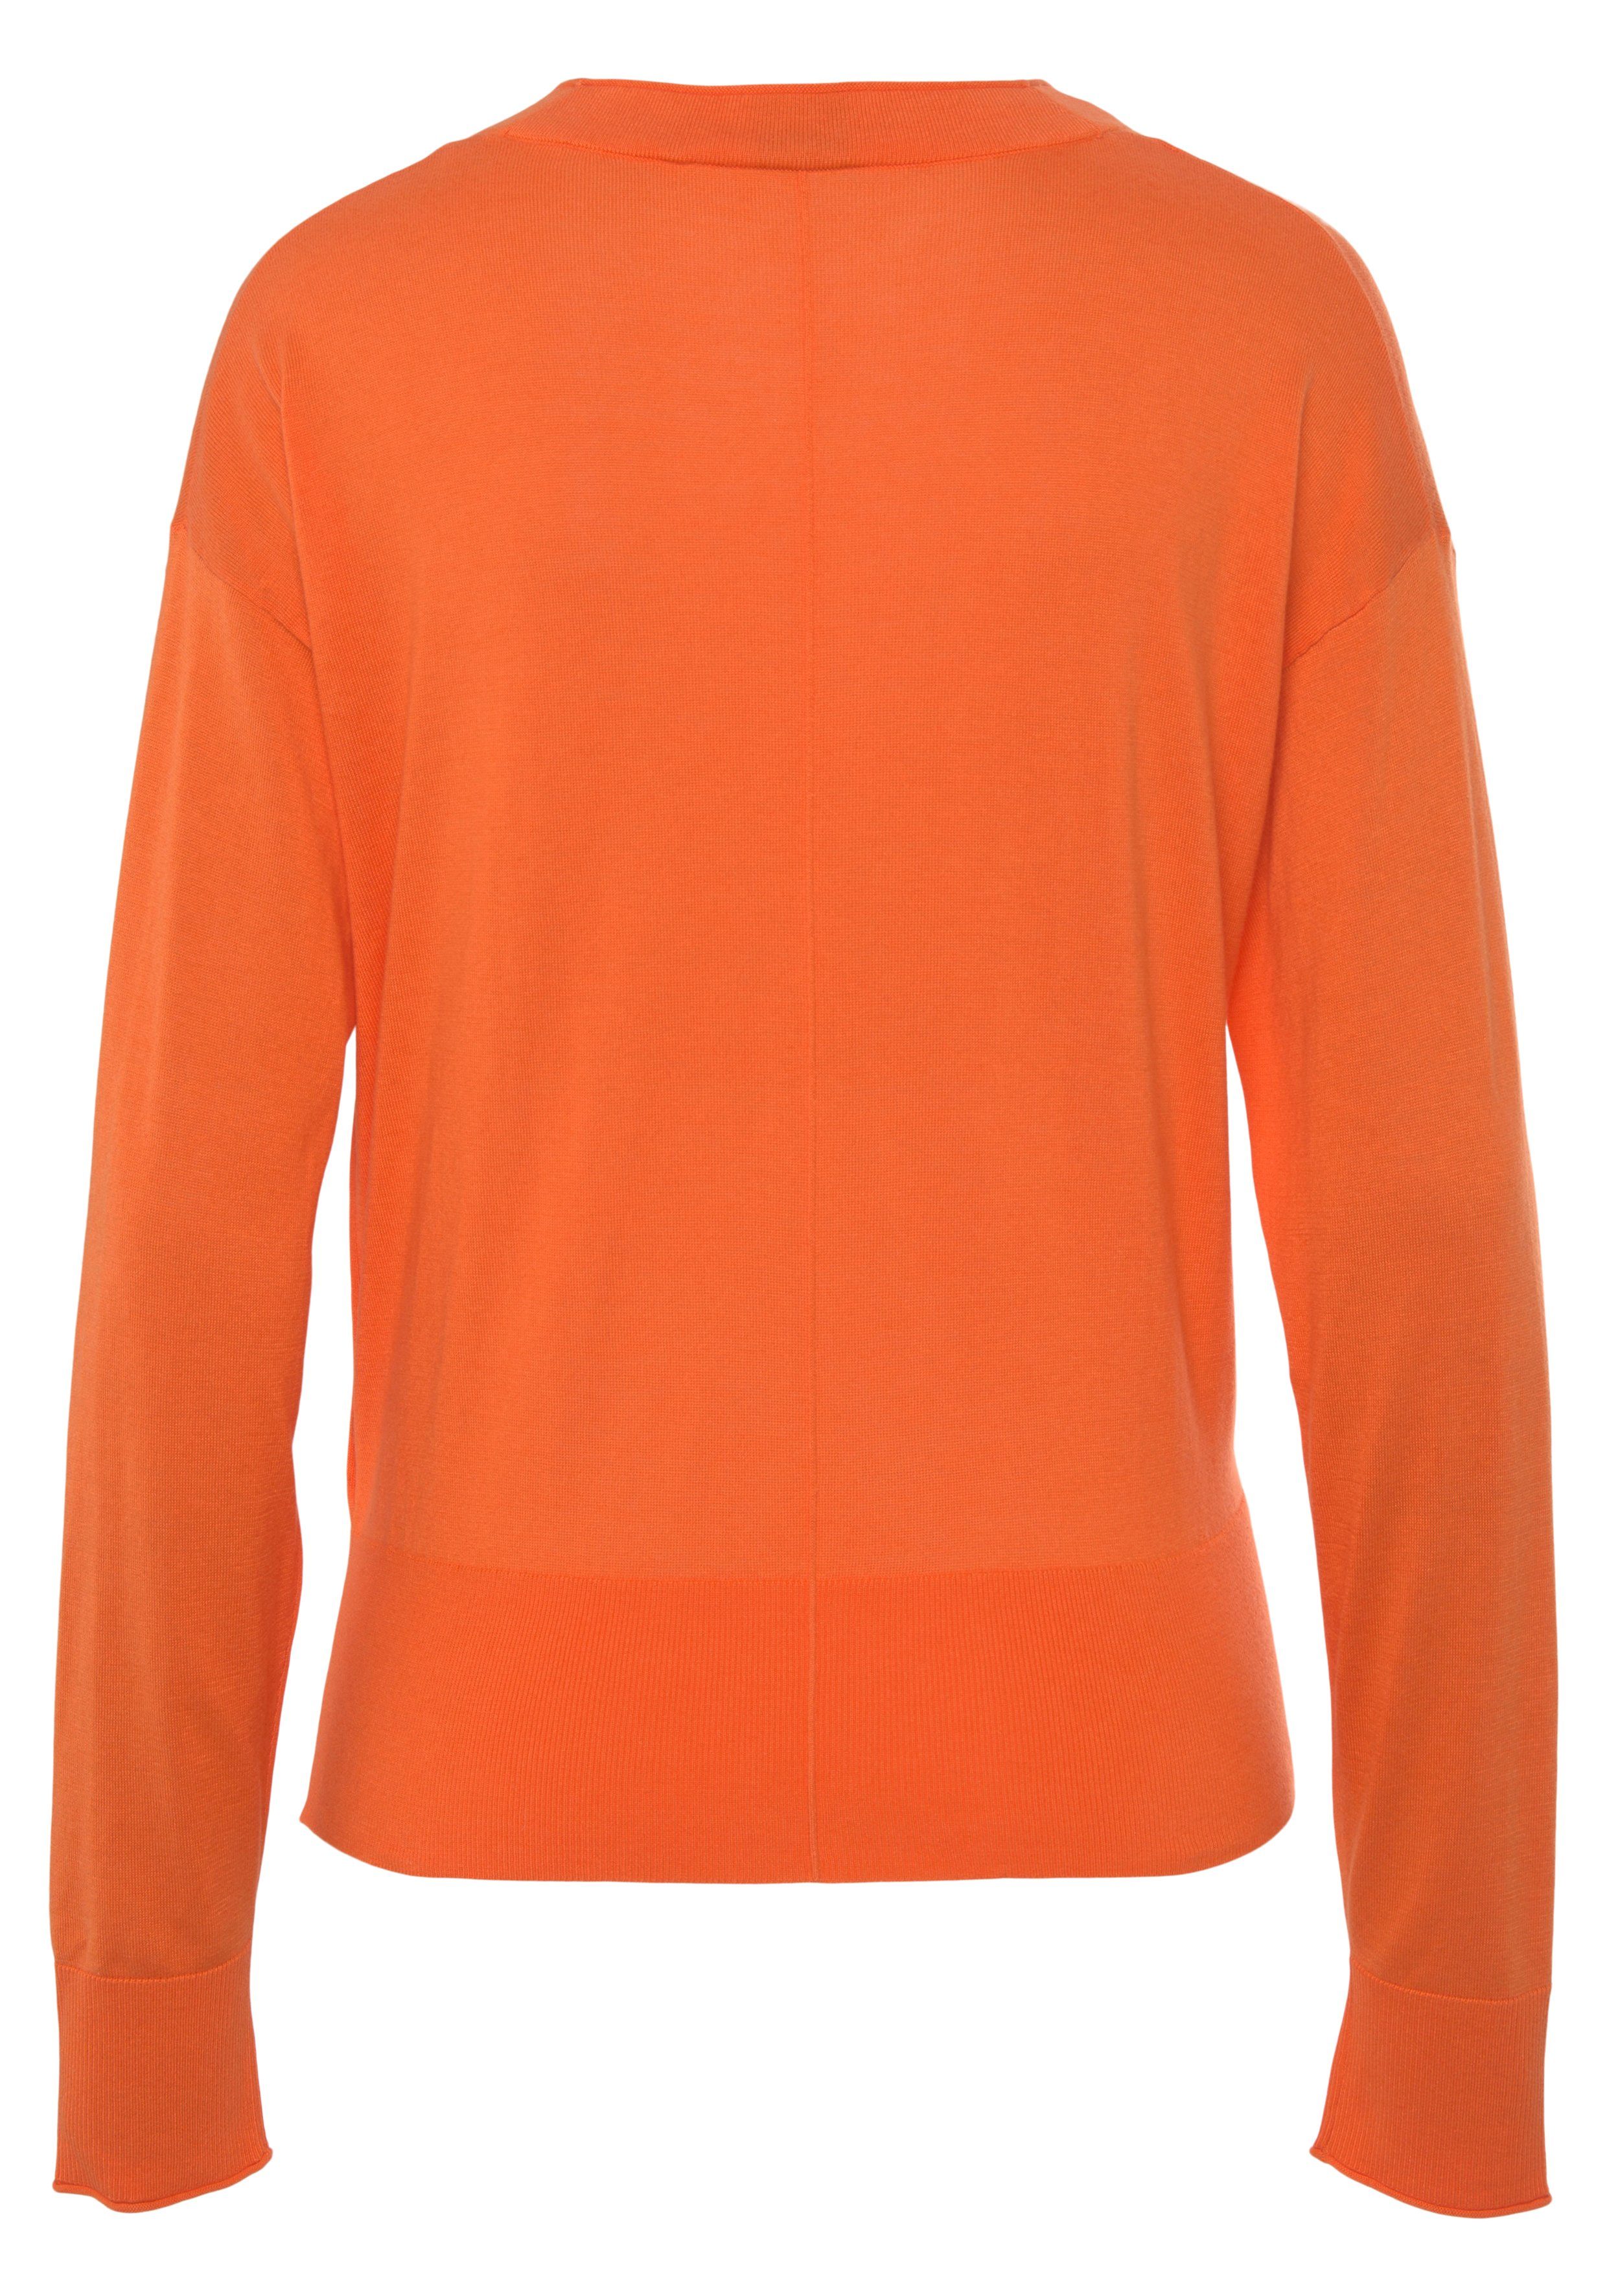 BOSS ORANGE Strickjacke C_Fedasa Open_Orange mit Baumwollmischung angenehmer V-Ausschnitt, nicht, Kratzt